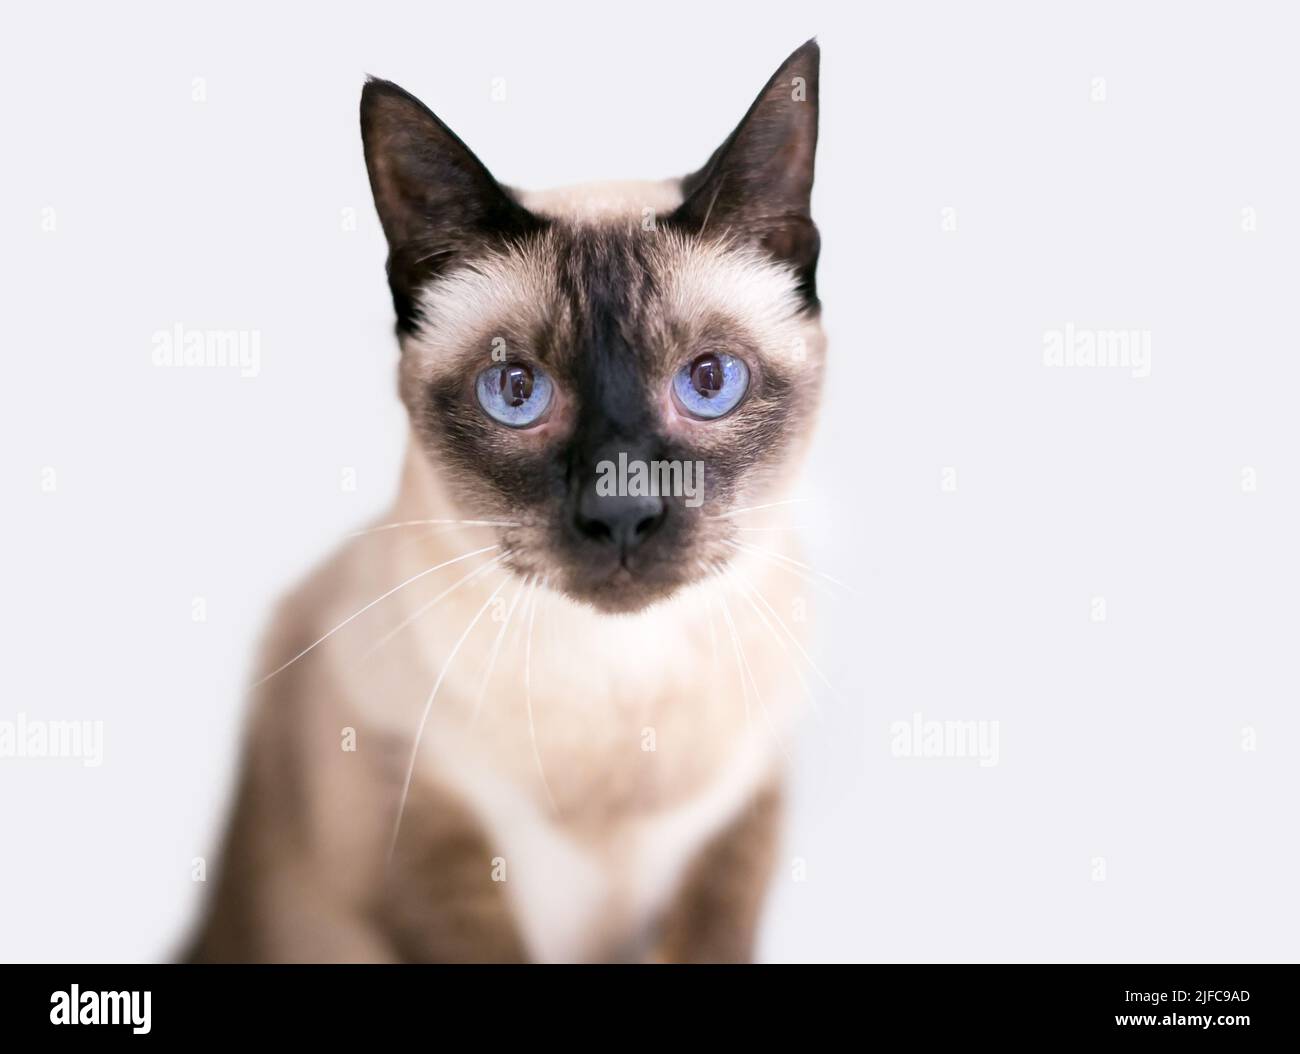 Un chat siamois de race pure avec des yeux bleus regardant la caméra Banque D'Images